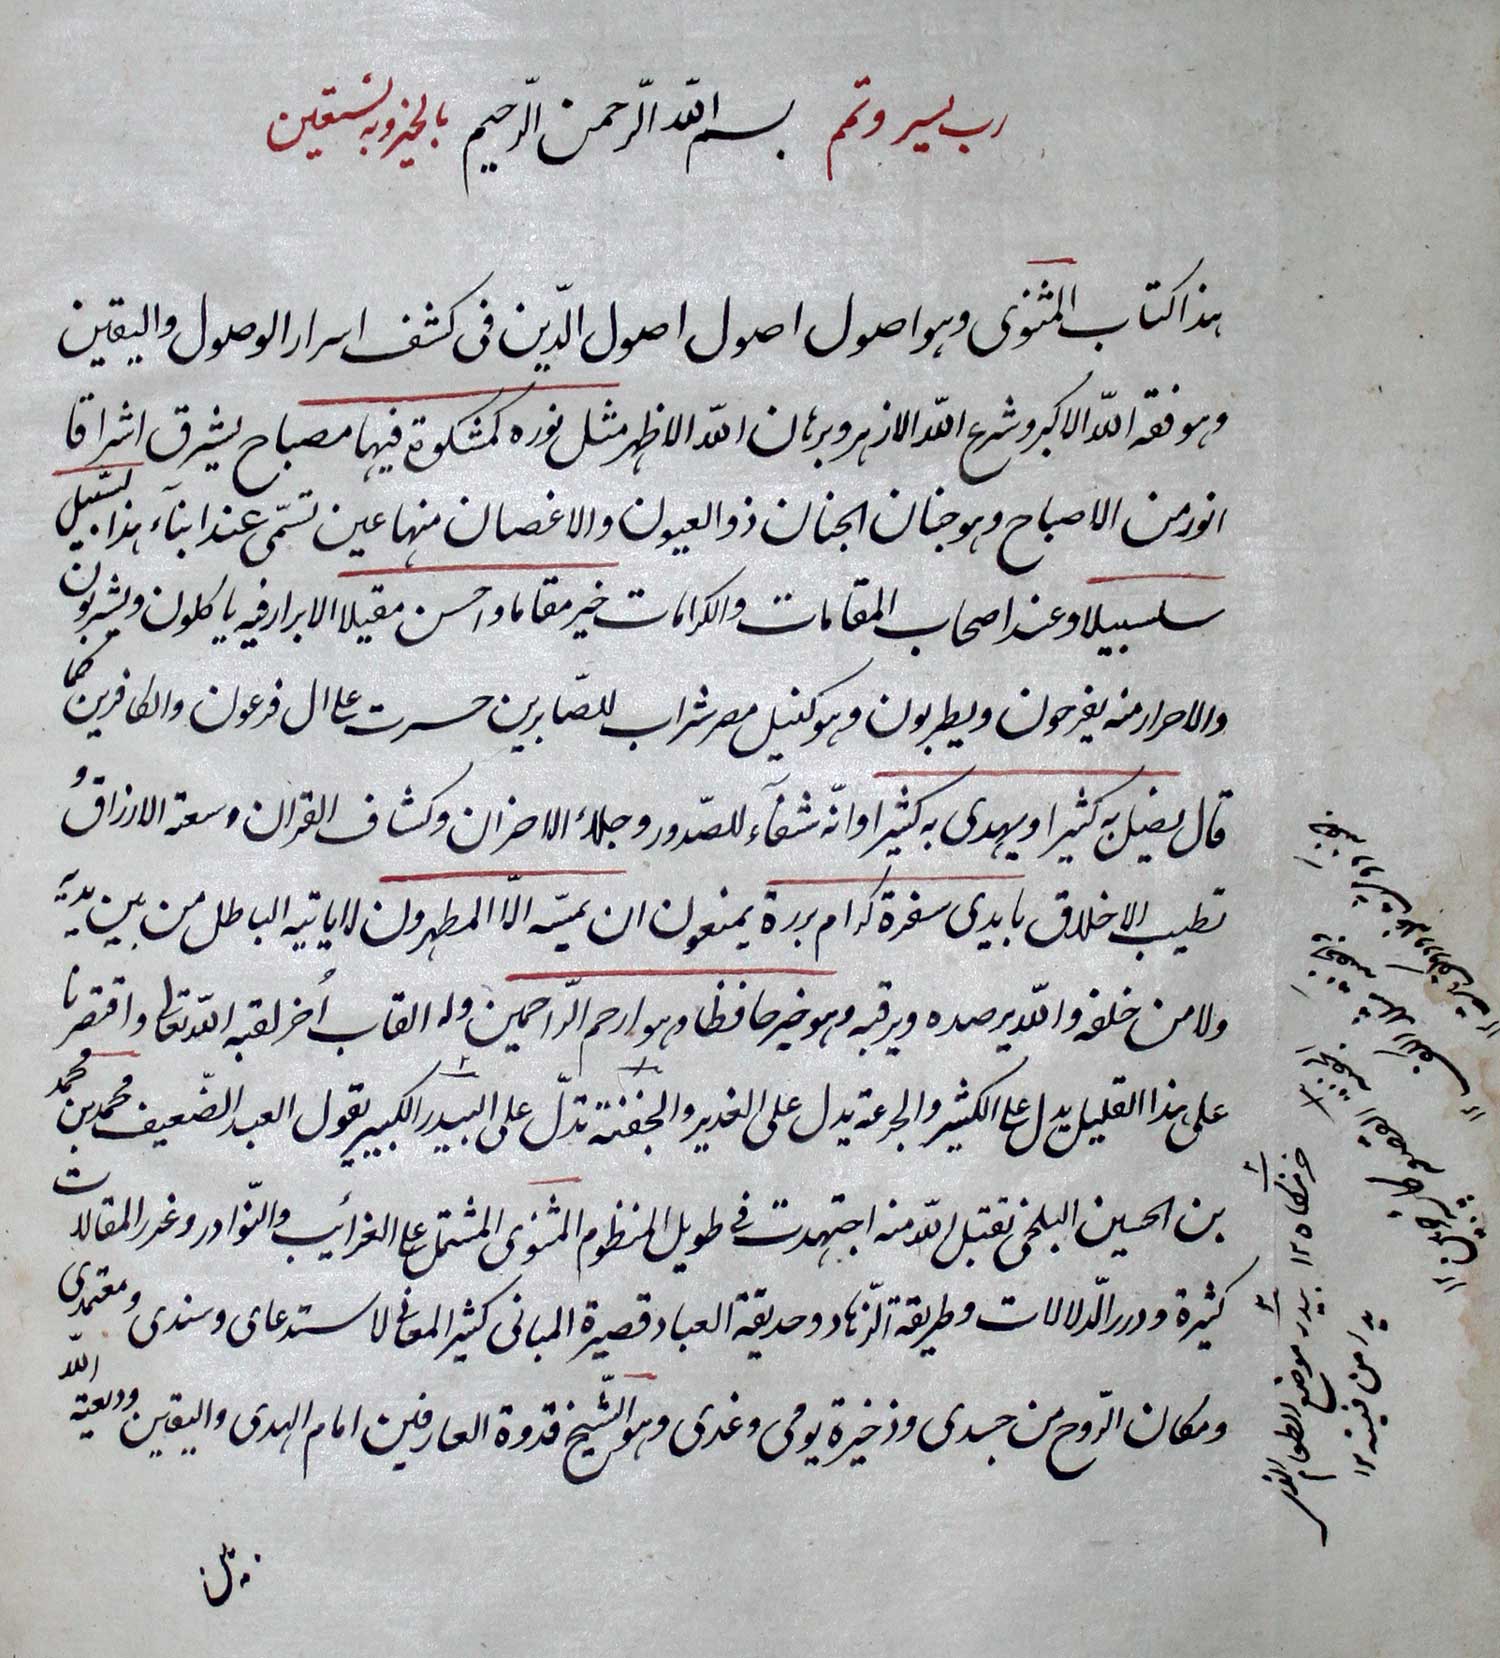 Djallal al-Din Rumi. Methnewi - Ma'nawi (Geistiges Methnewi). Persische Handschrift, geschrieben von